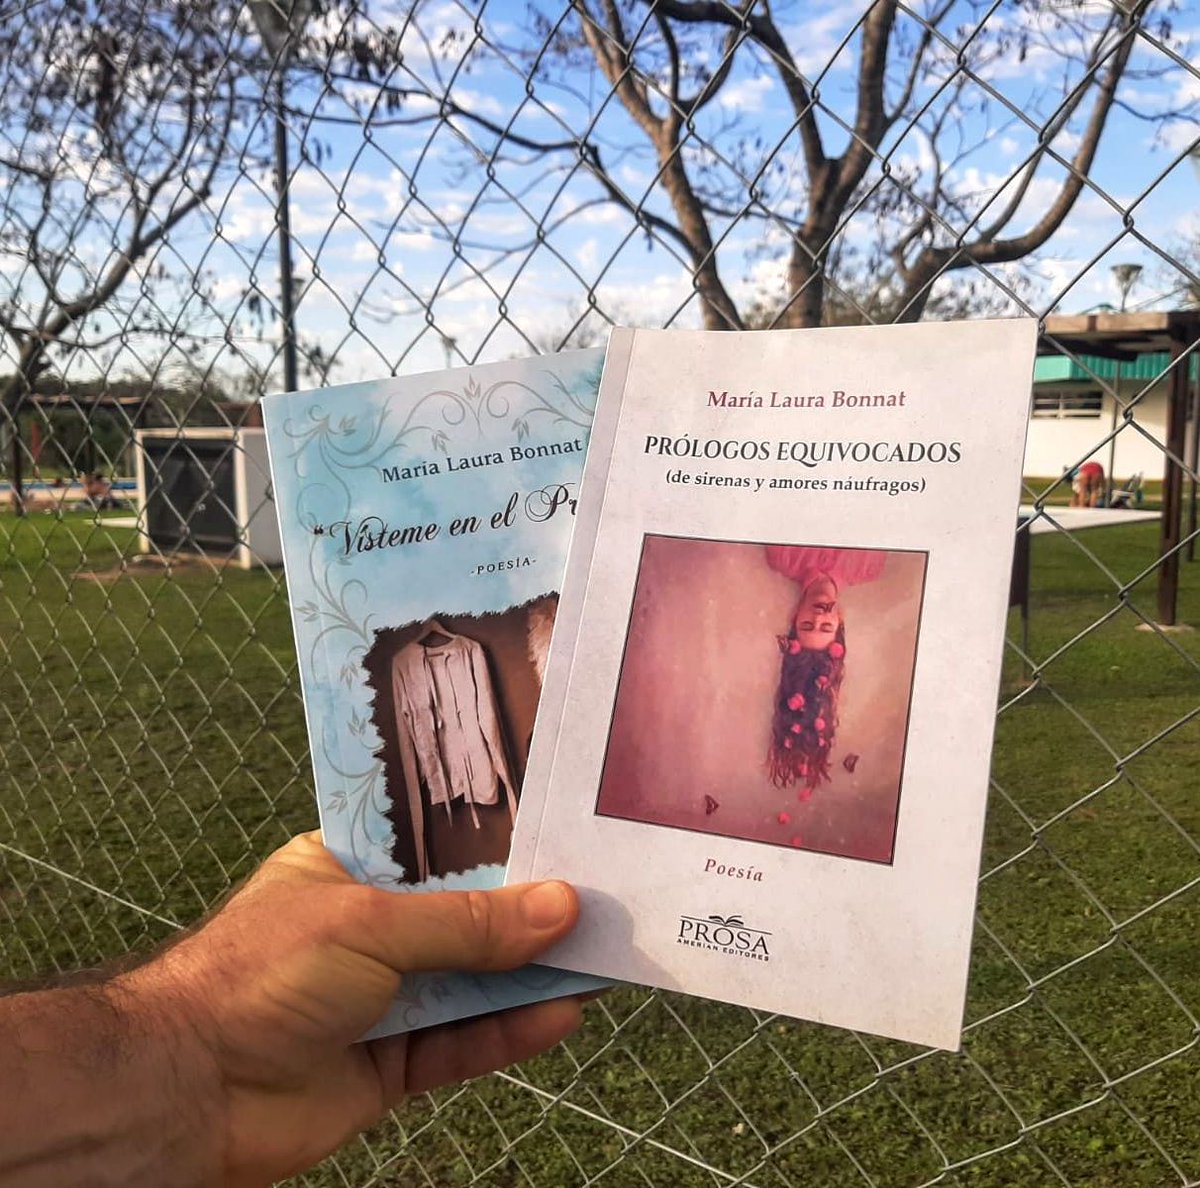 Mis Libros de paseo por las termas de Entre Ríos ¡Muchas gracias Naty por las fotos! 
#mislibros  #entreriosargentina  #prologosequivocados #vistemeenelpresagio #dealmapoeta #dealmapoetamlb